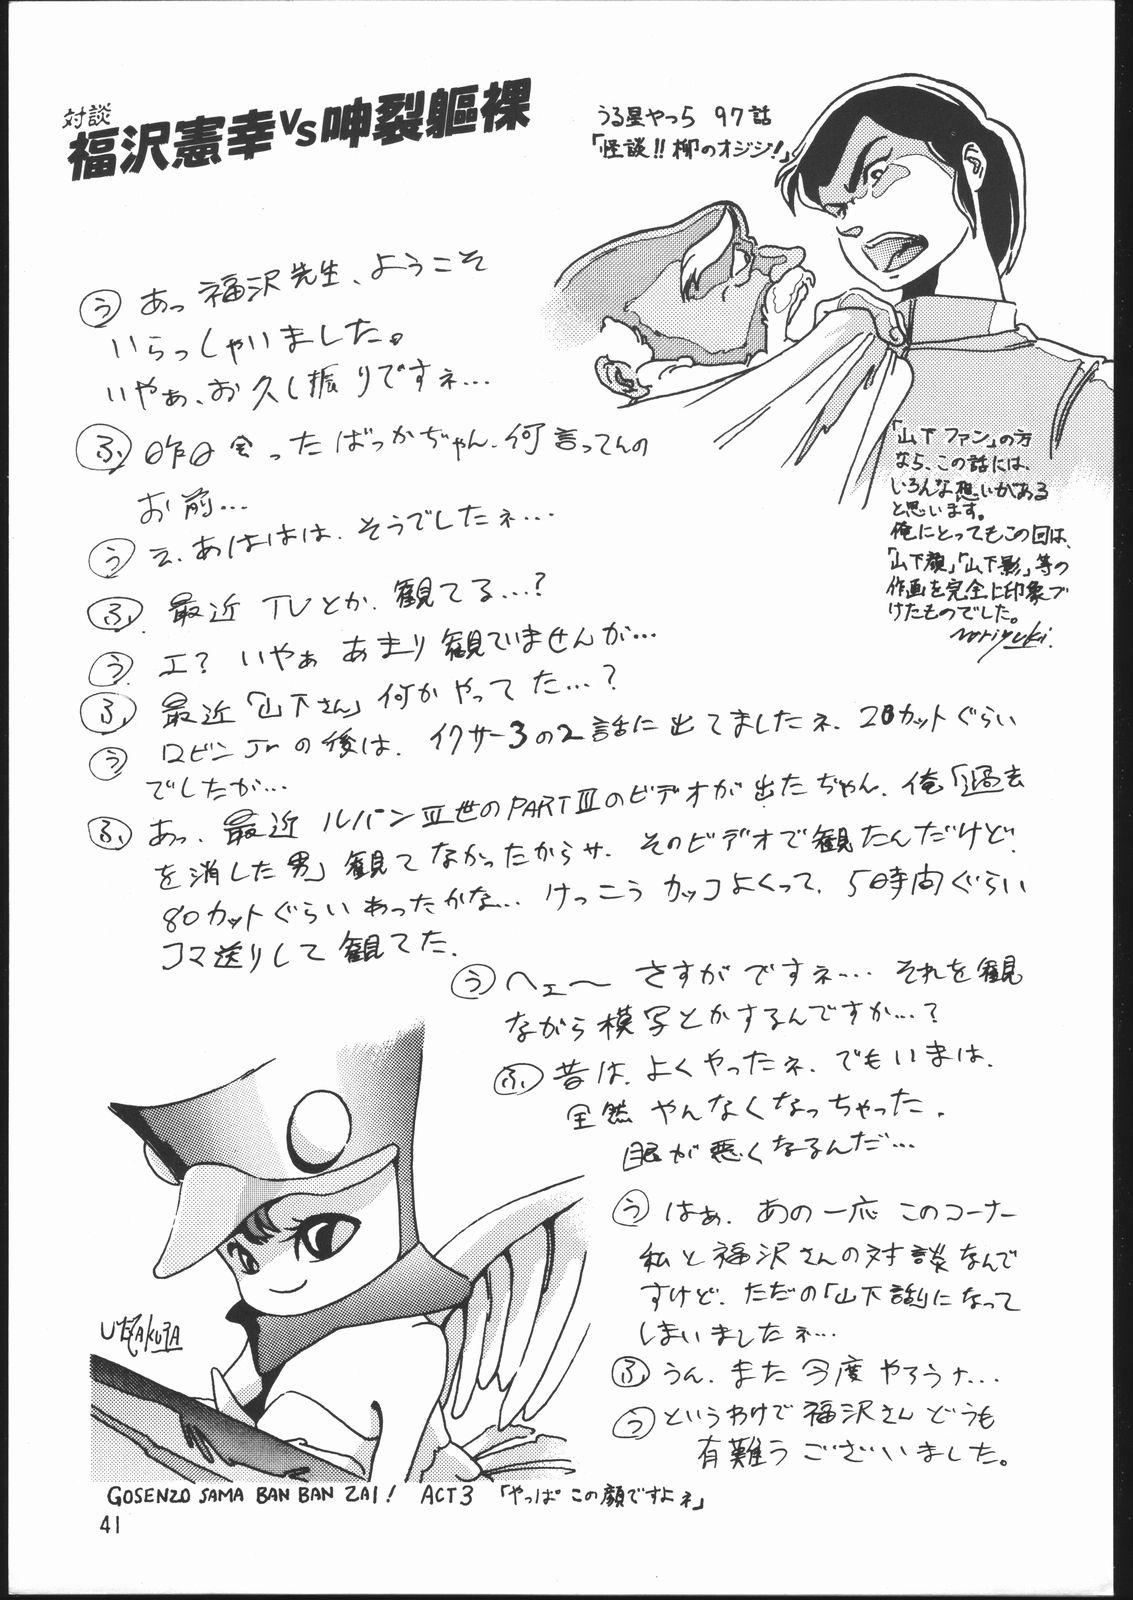 Bunda Grande GATHER - Urusei yatsura Fushigi no umi no nadia Yawara Transexual - Page 40